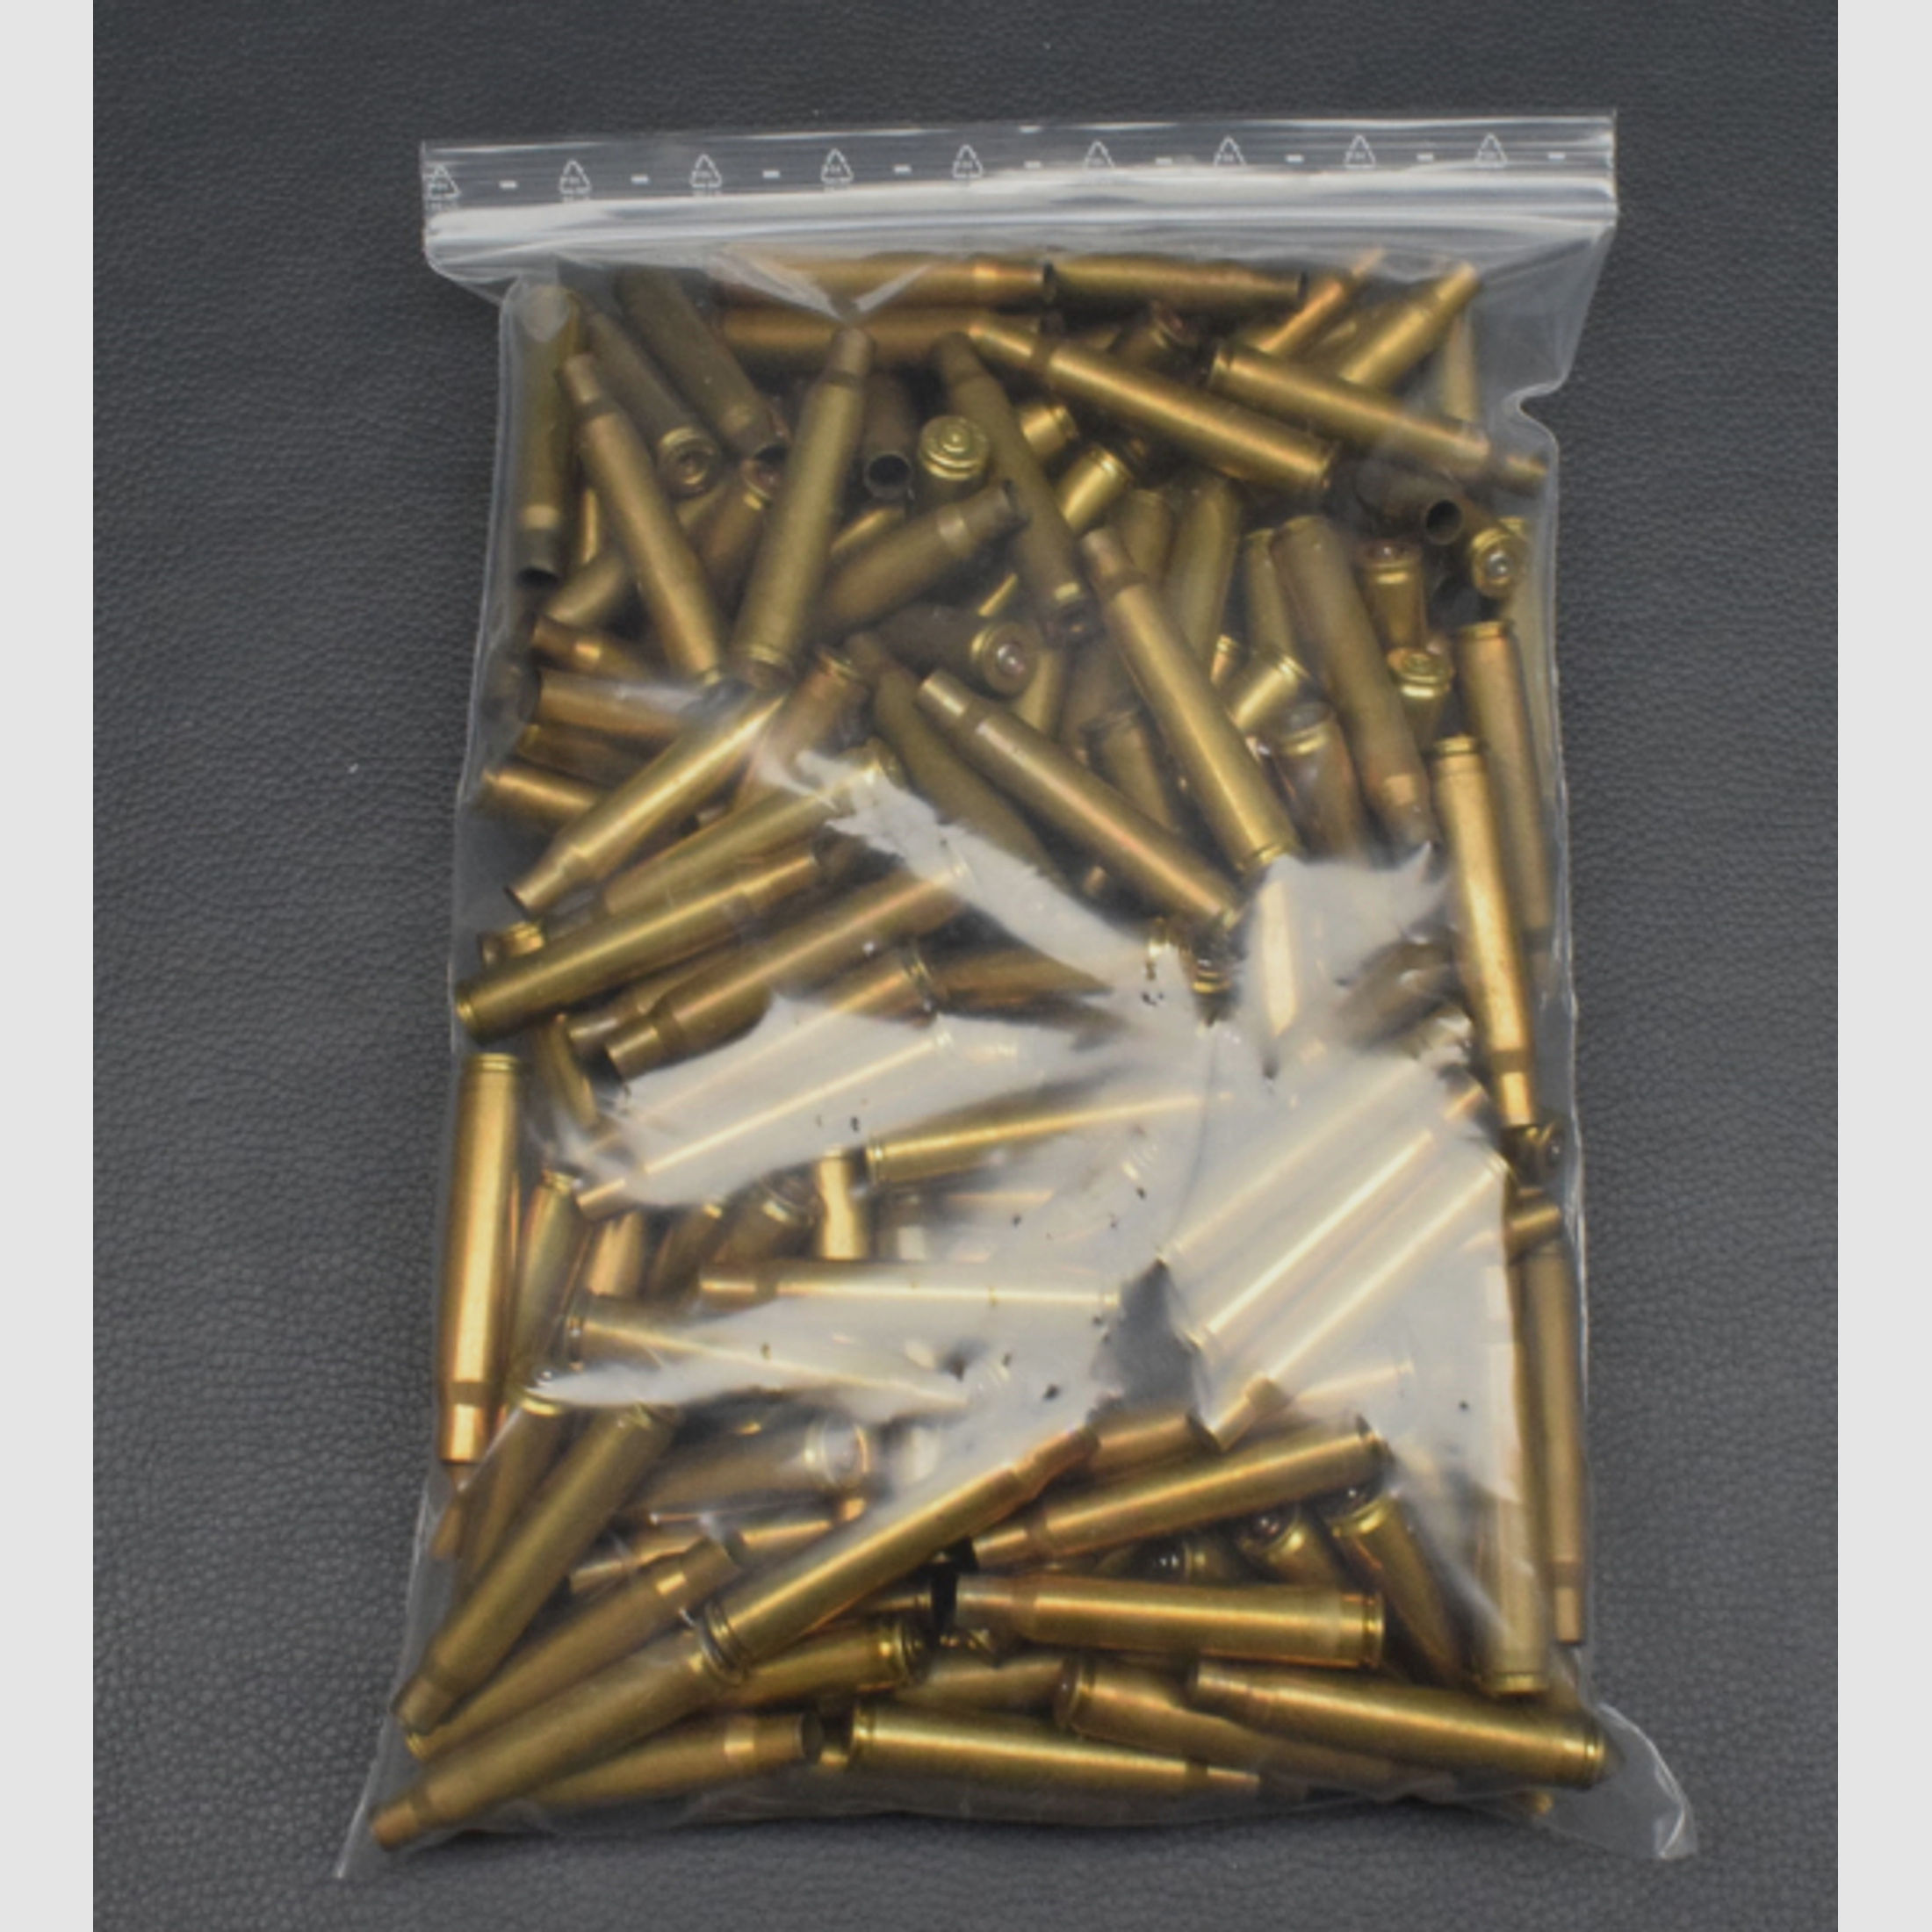 190 Hülsen, RWS/Remington/nny 7x64, 1x Abgeschlagen, zum Sonderpreis